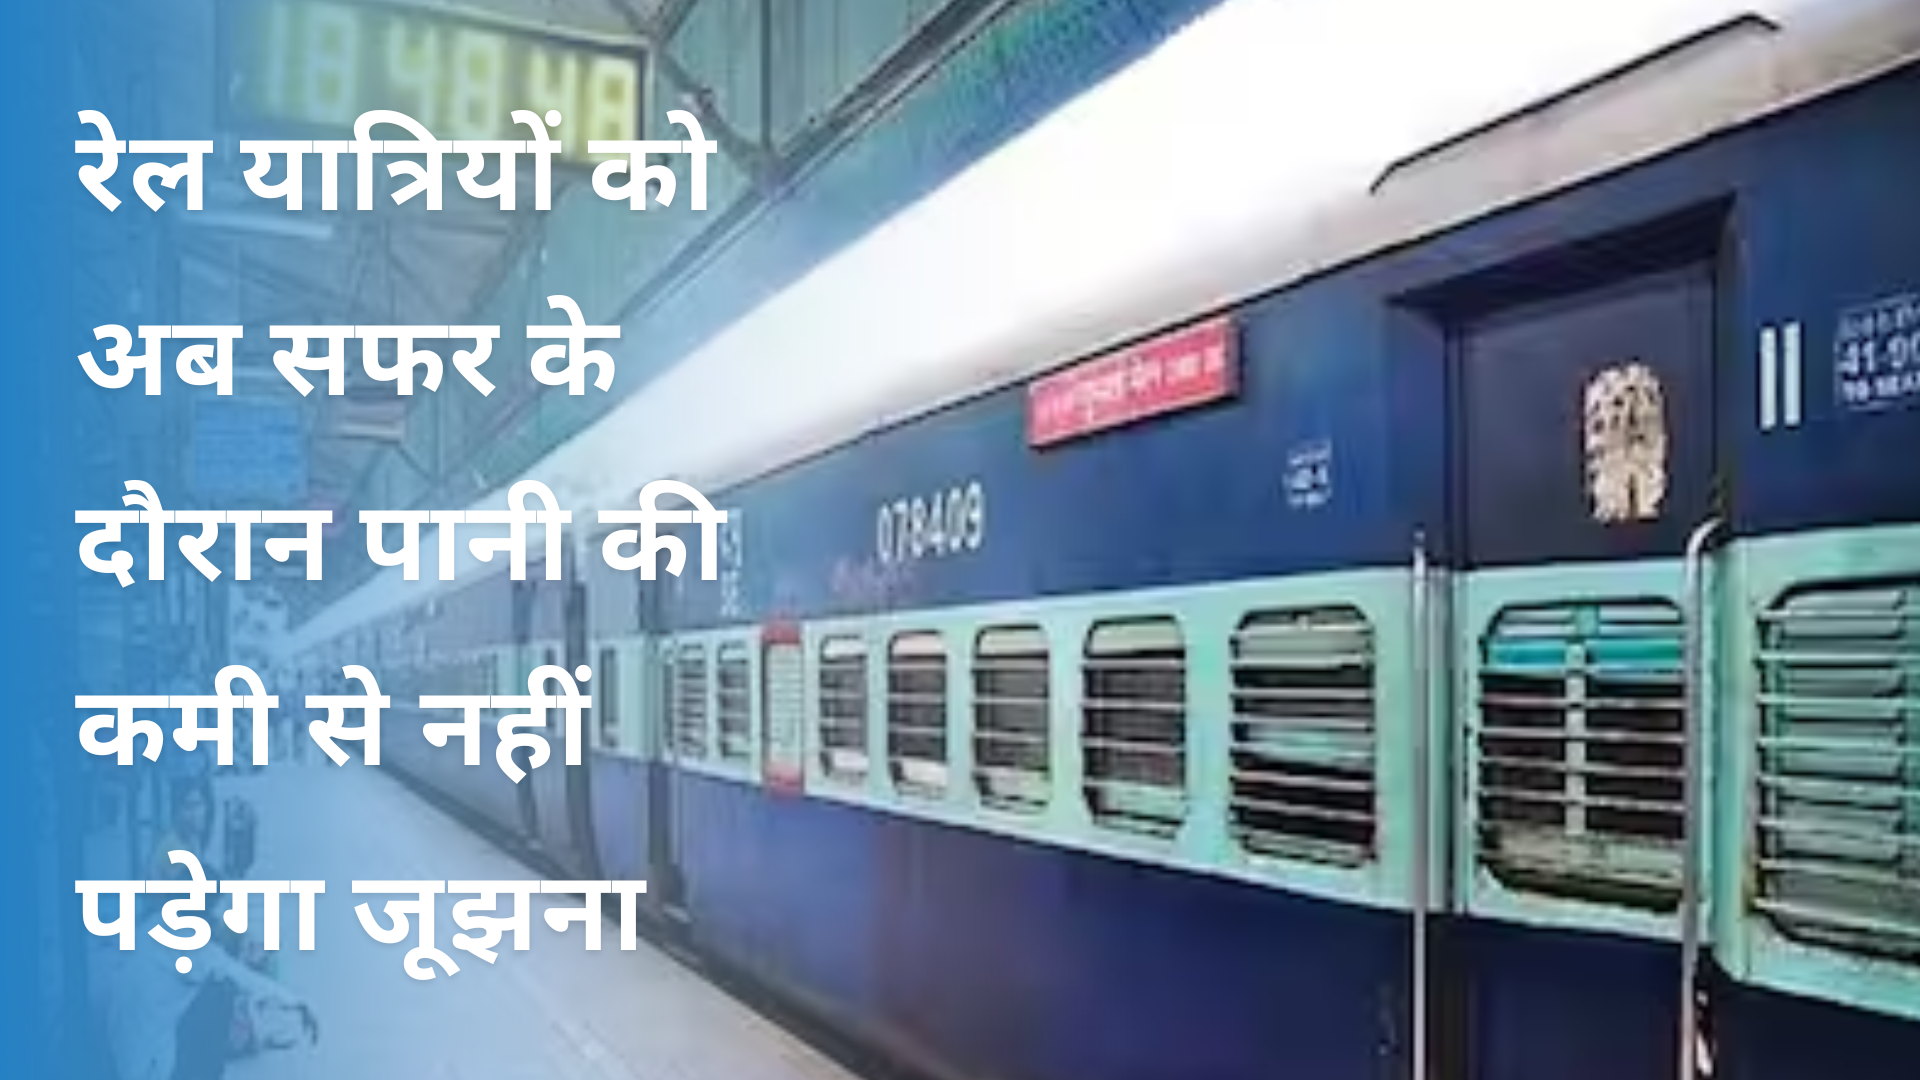 लखनऊ: रेल यात्रियों को अब सफर के दौरान पानी की कमी से नहीं पड़ेगा जूझना, रेलवे की यह सुविधा लाएगी रंग, जानिए